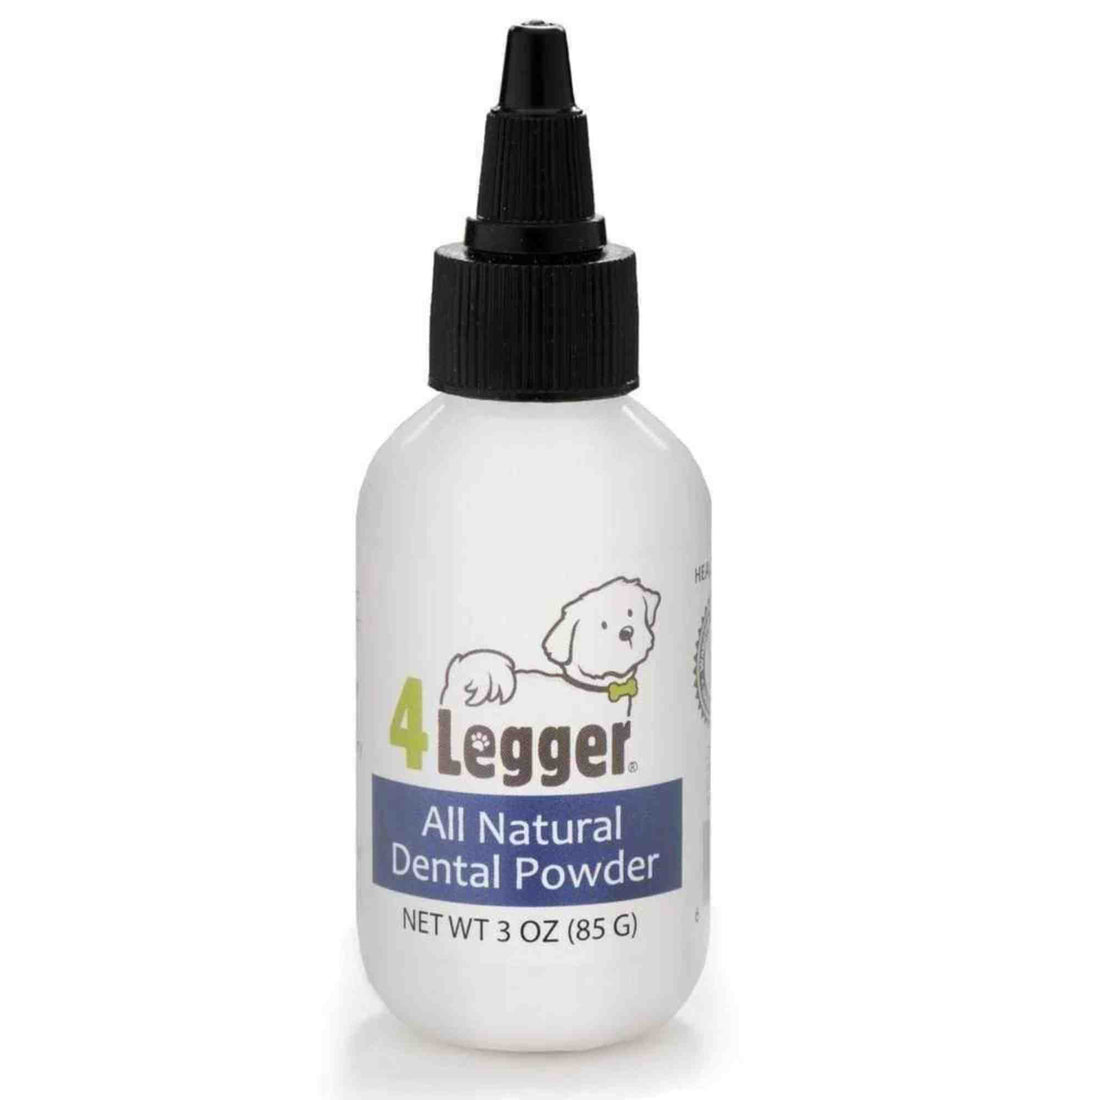 4-legger-dental-care-mint-fresh-all-natural-dental-powder-safe-non-toxic-vegan-toothpaste-alternative- front of bottle